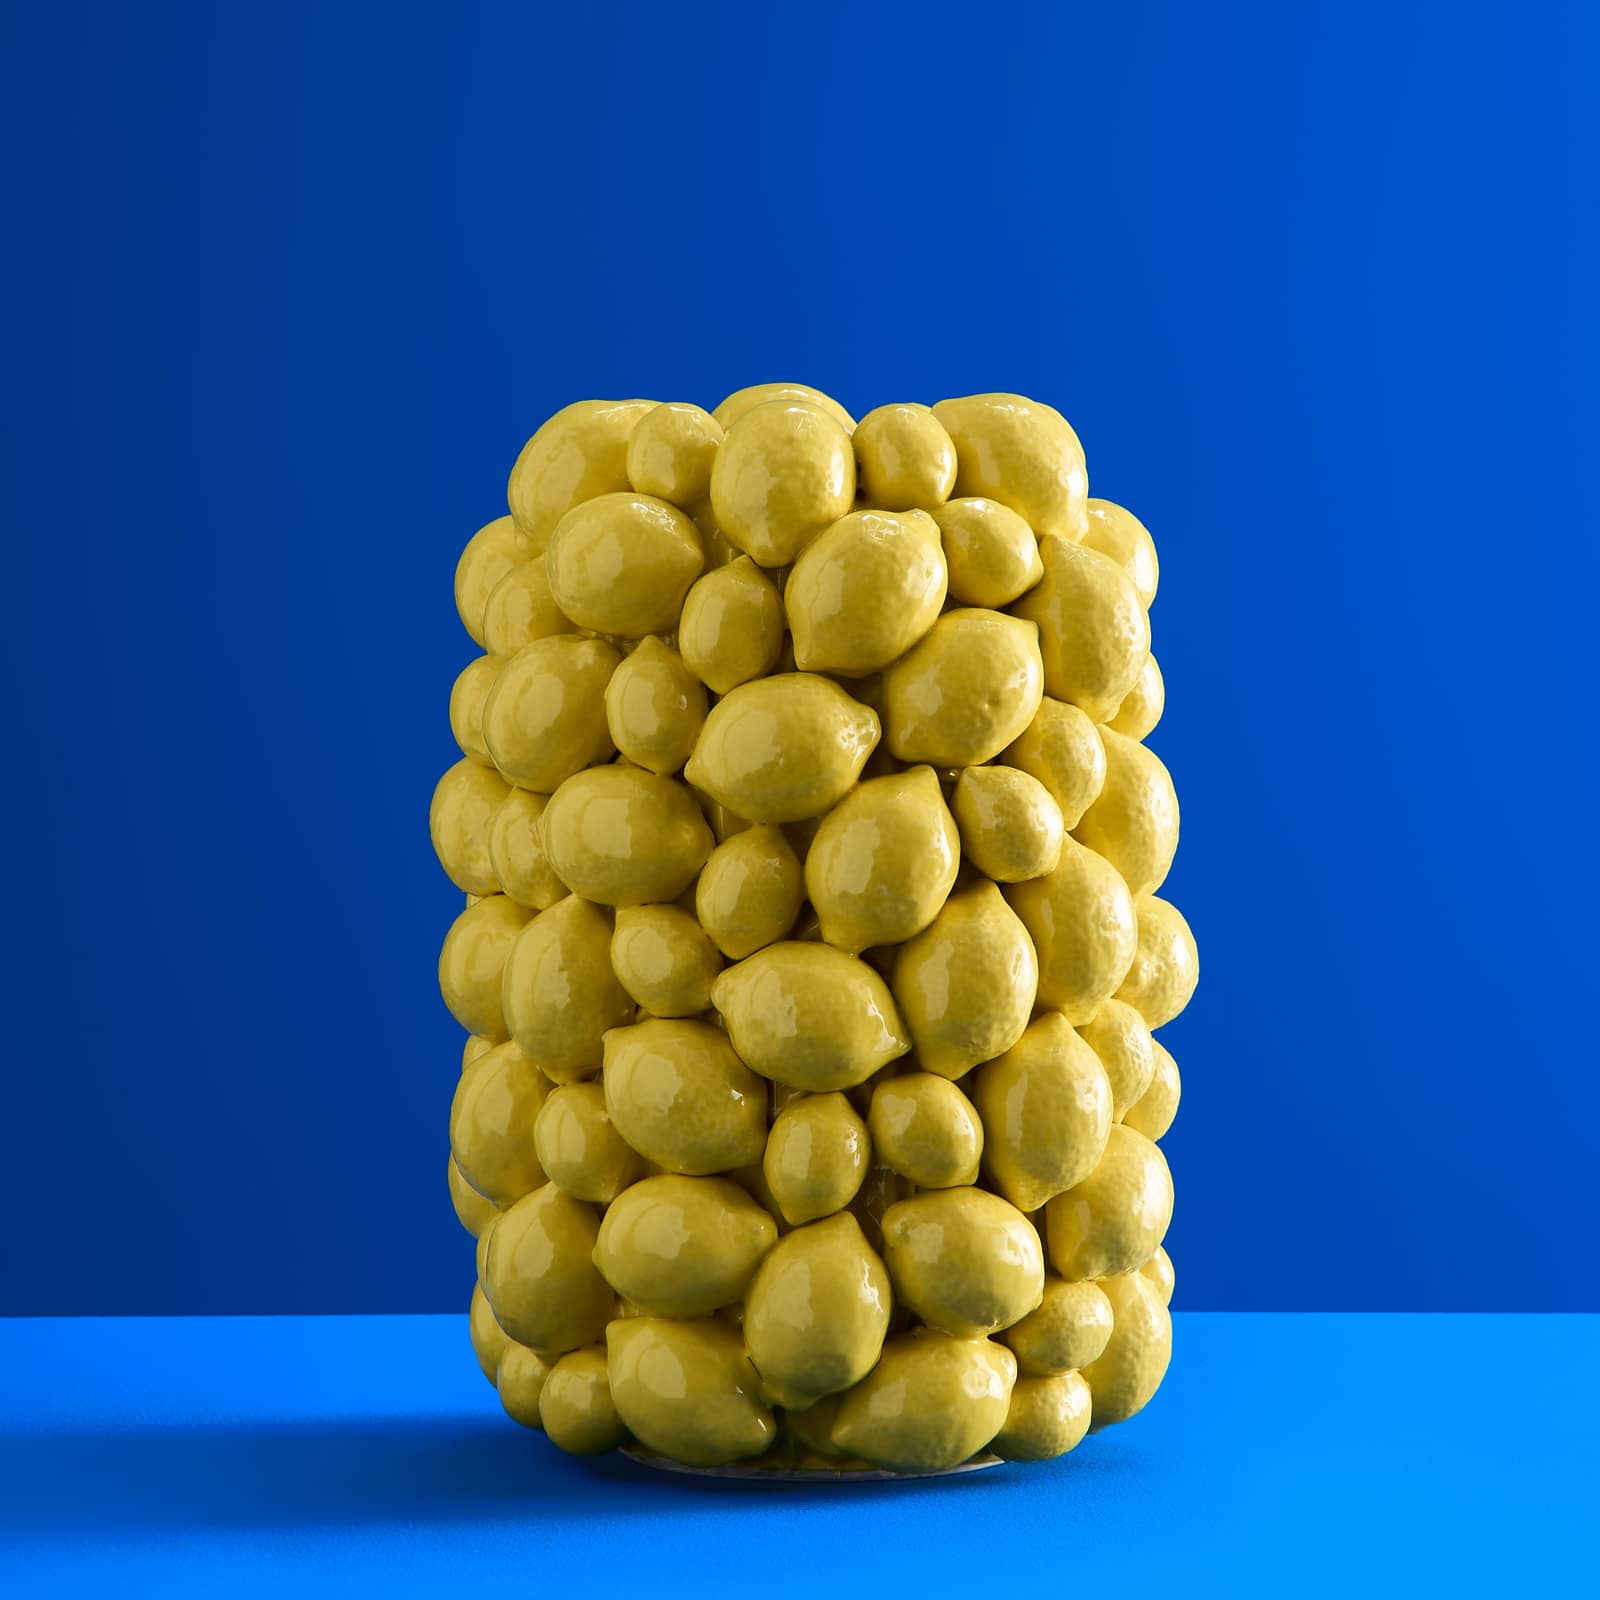 Vase citron, jaune